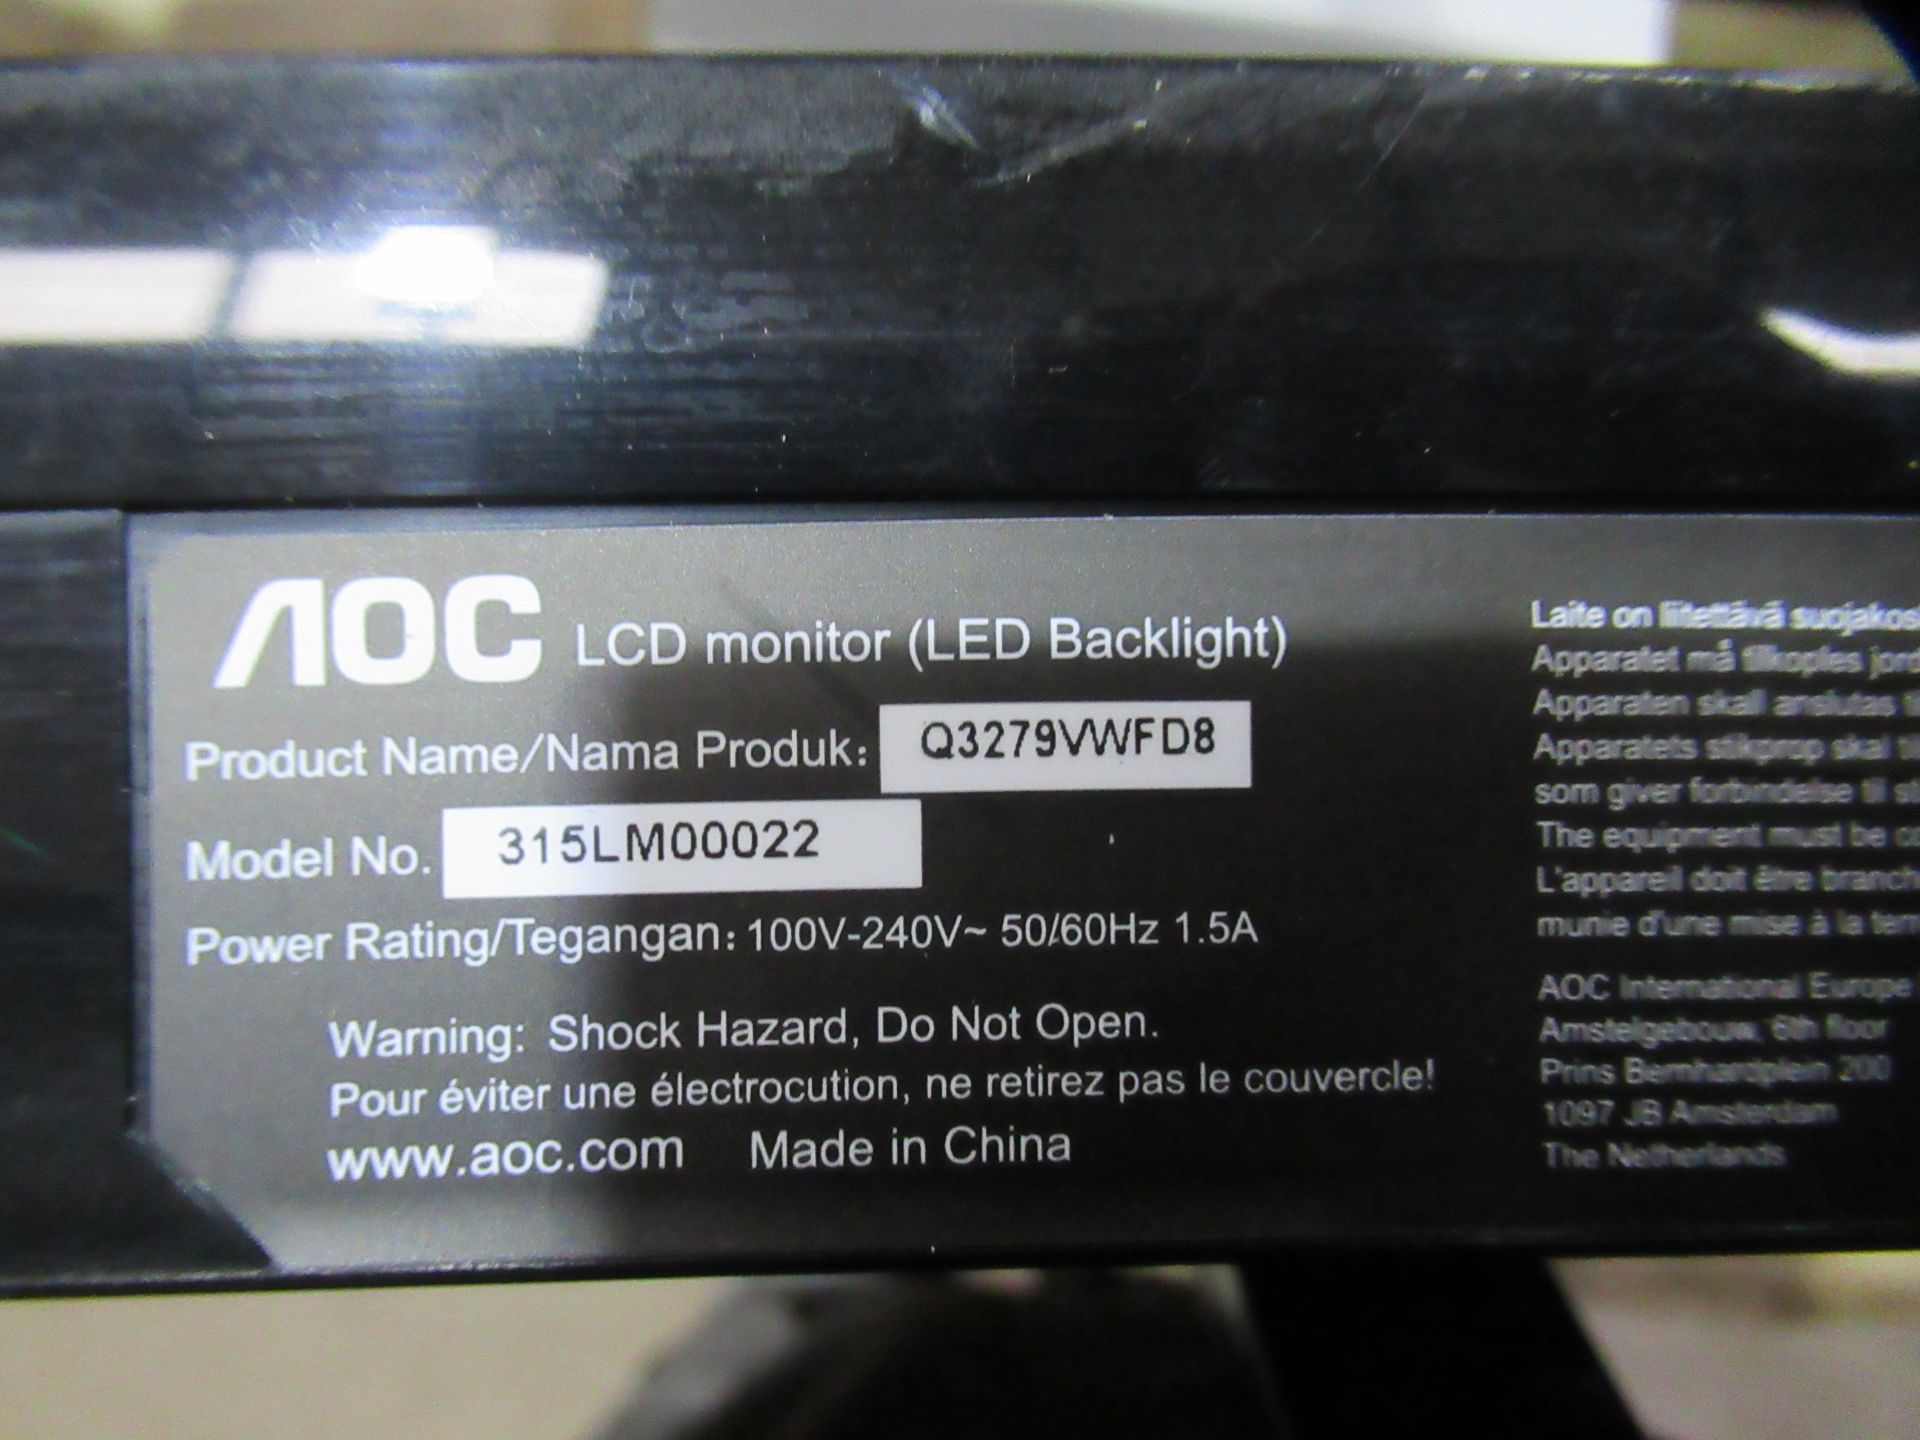 3x AOC LCD Monitors (LED Backlight) - Image 7 of 7